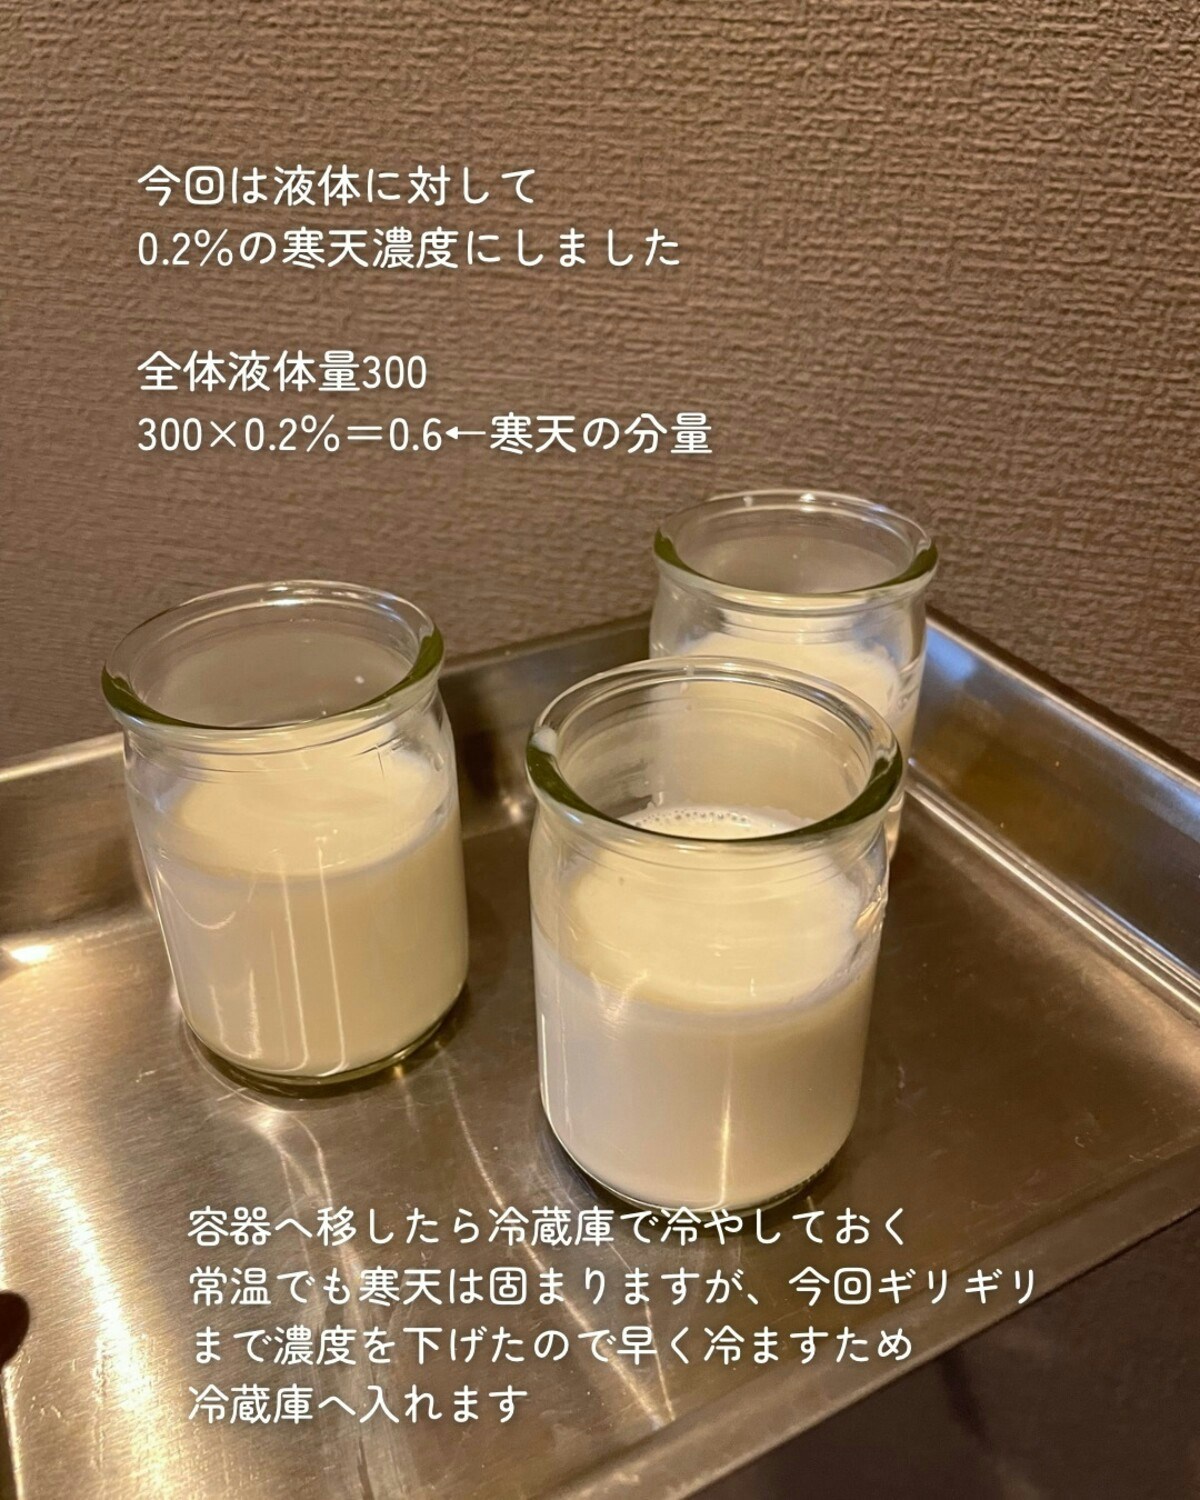 ぷるんぷるんの秘けつは「0.2%」子どもウケ抜群な牛乳プリンの作り方